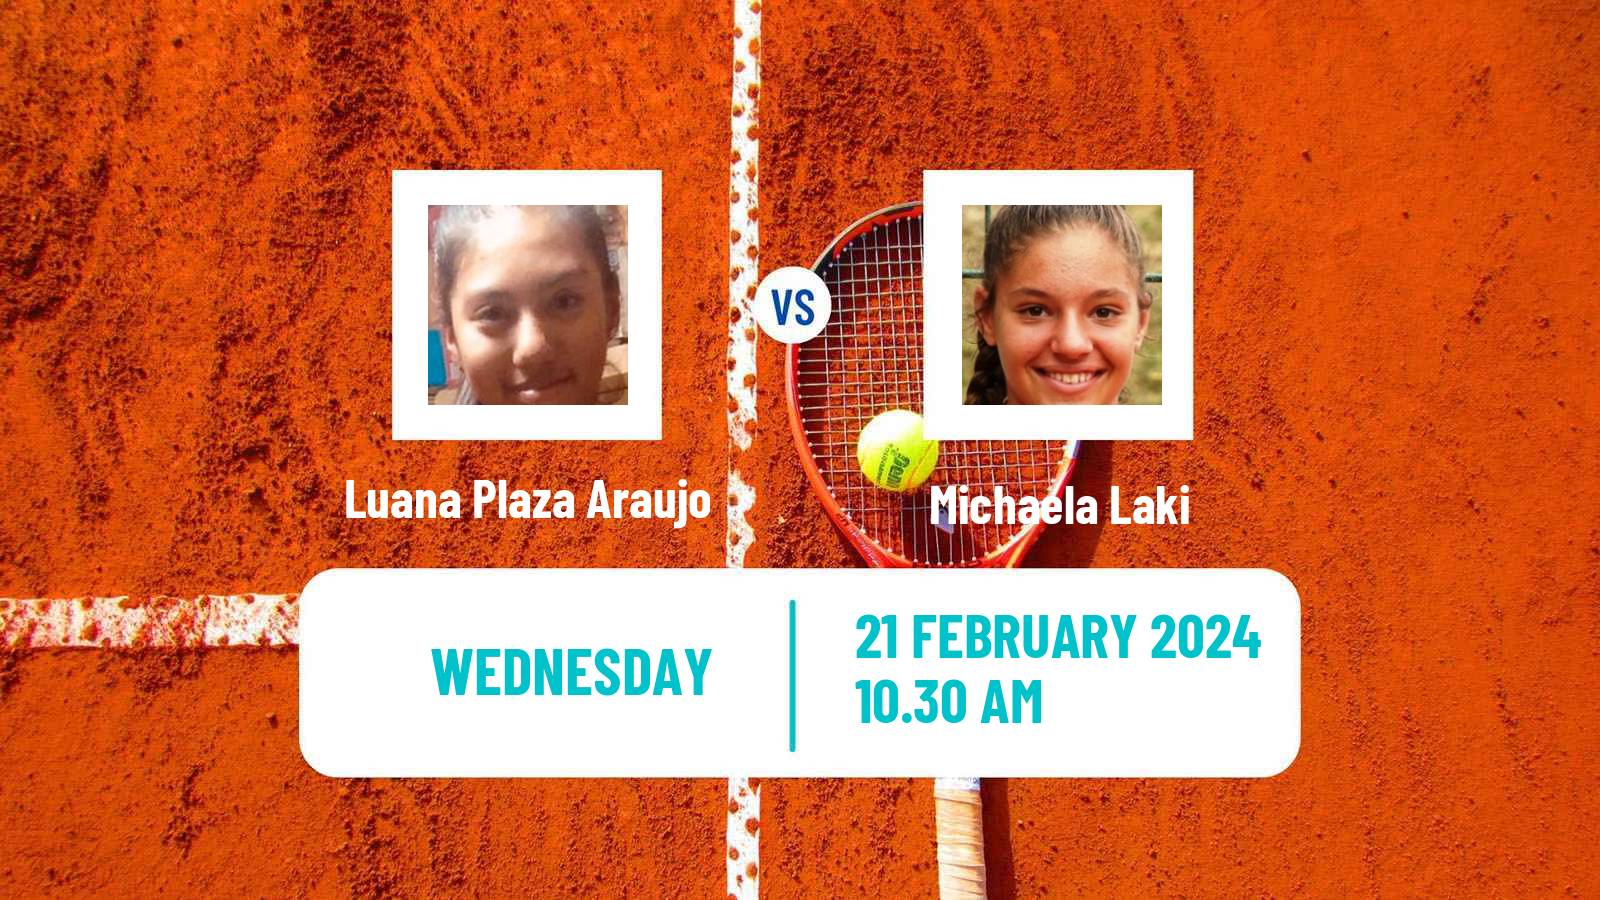 Tennis ITF W15 Monastir 6 Women Luana Plaza Araujo - Michaela Laki